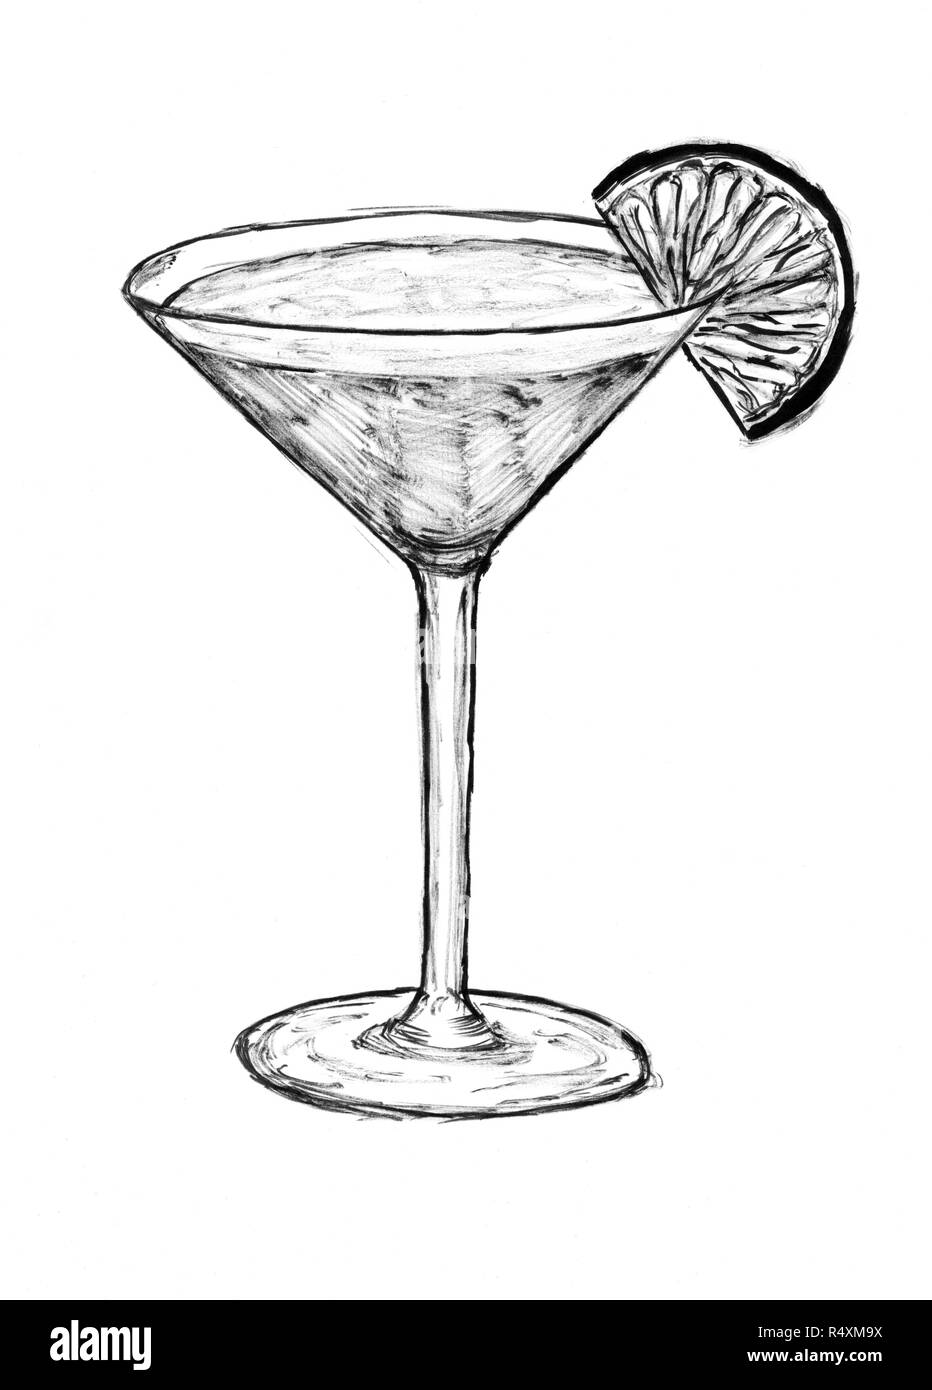 Inchiostro nero disegno a mano di vetro con cocktail e una fetta di lime Foto Stock